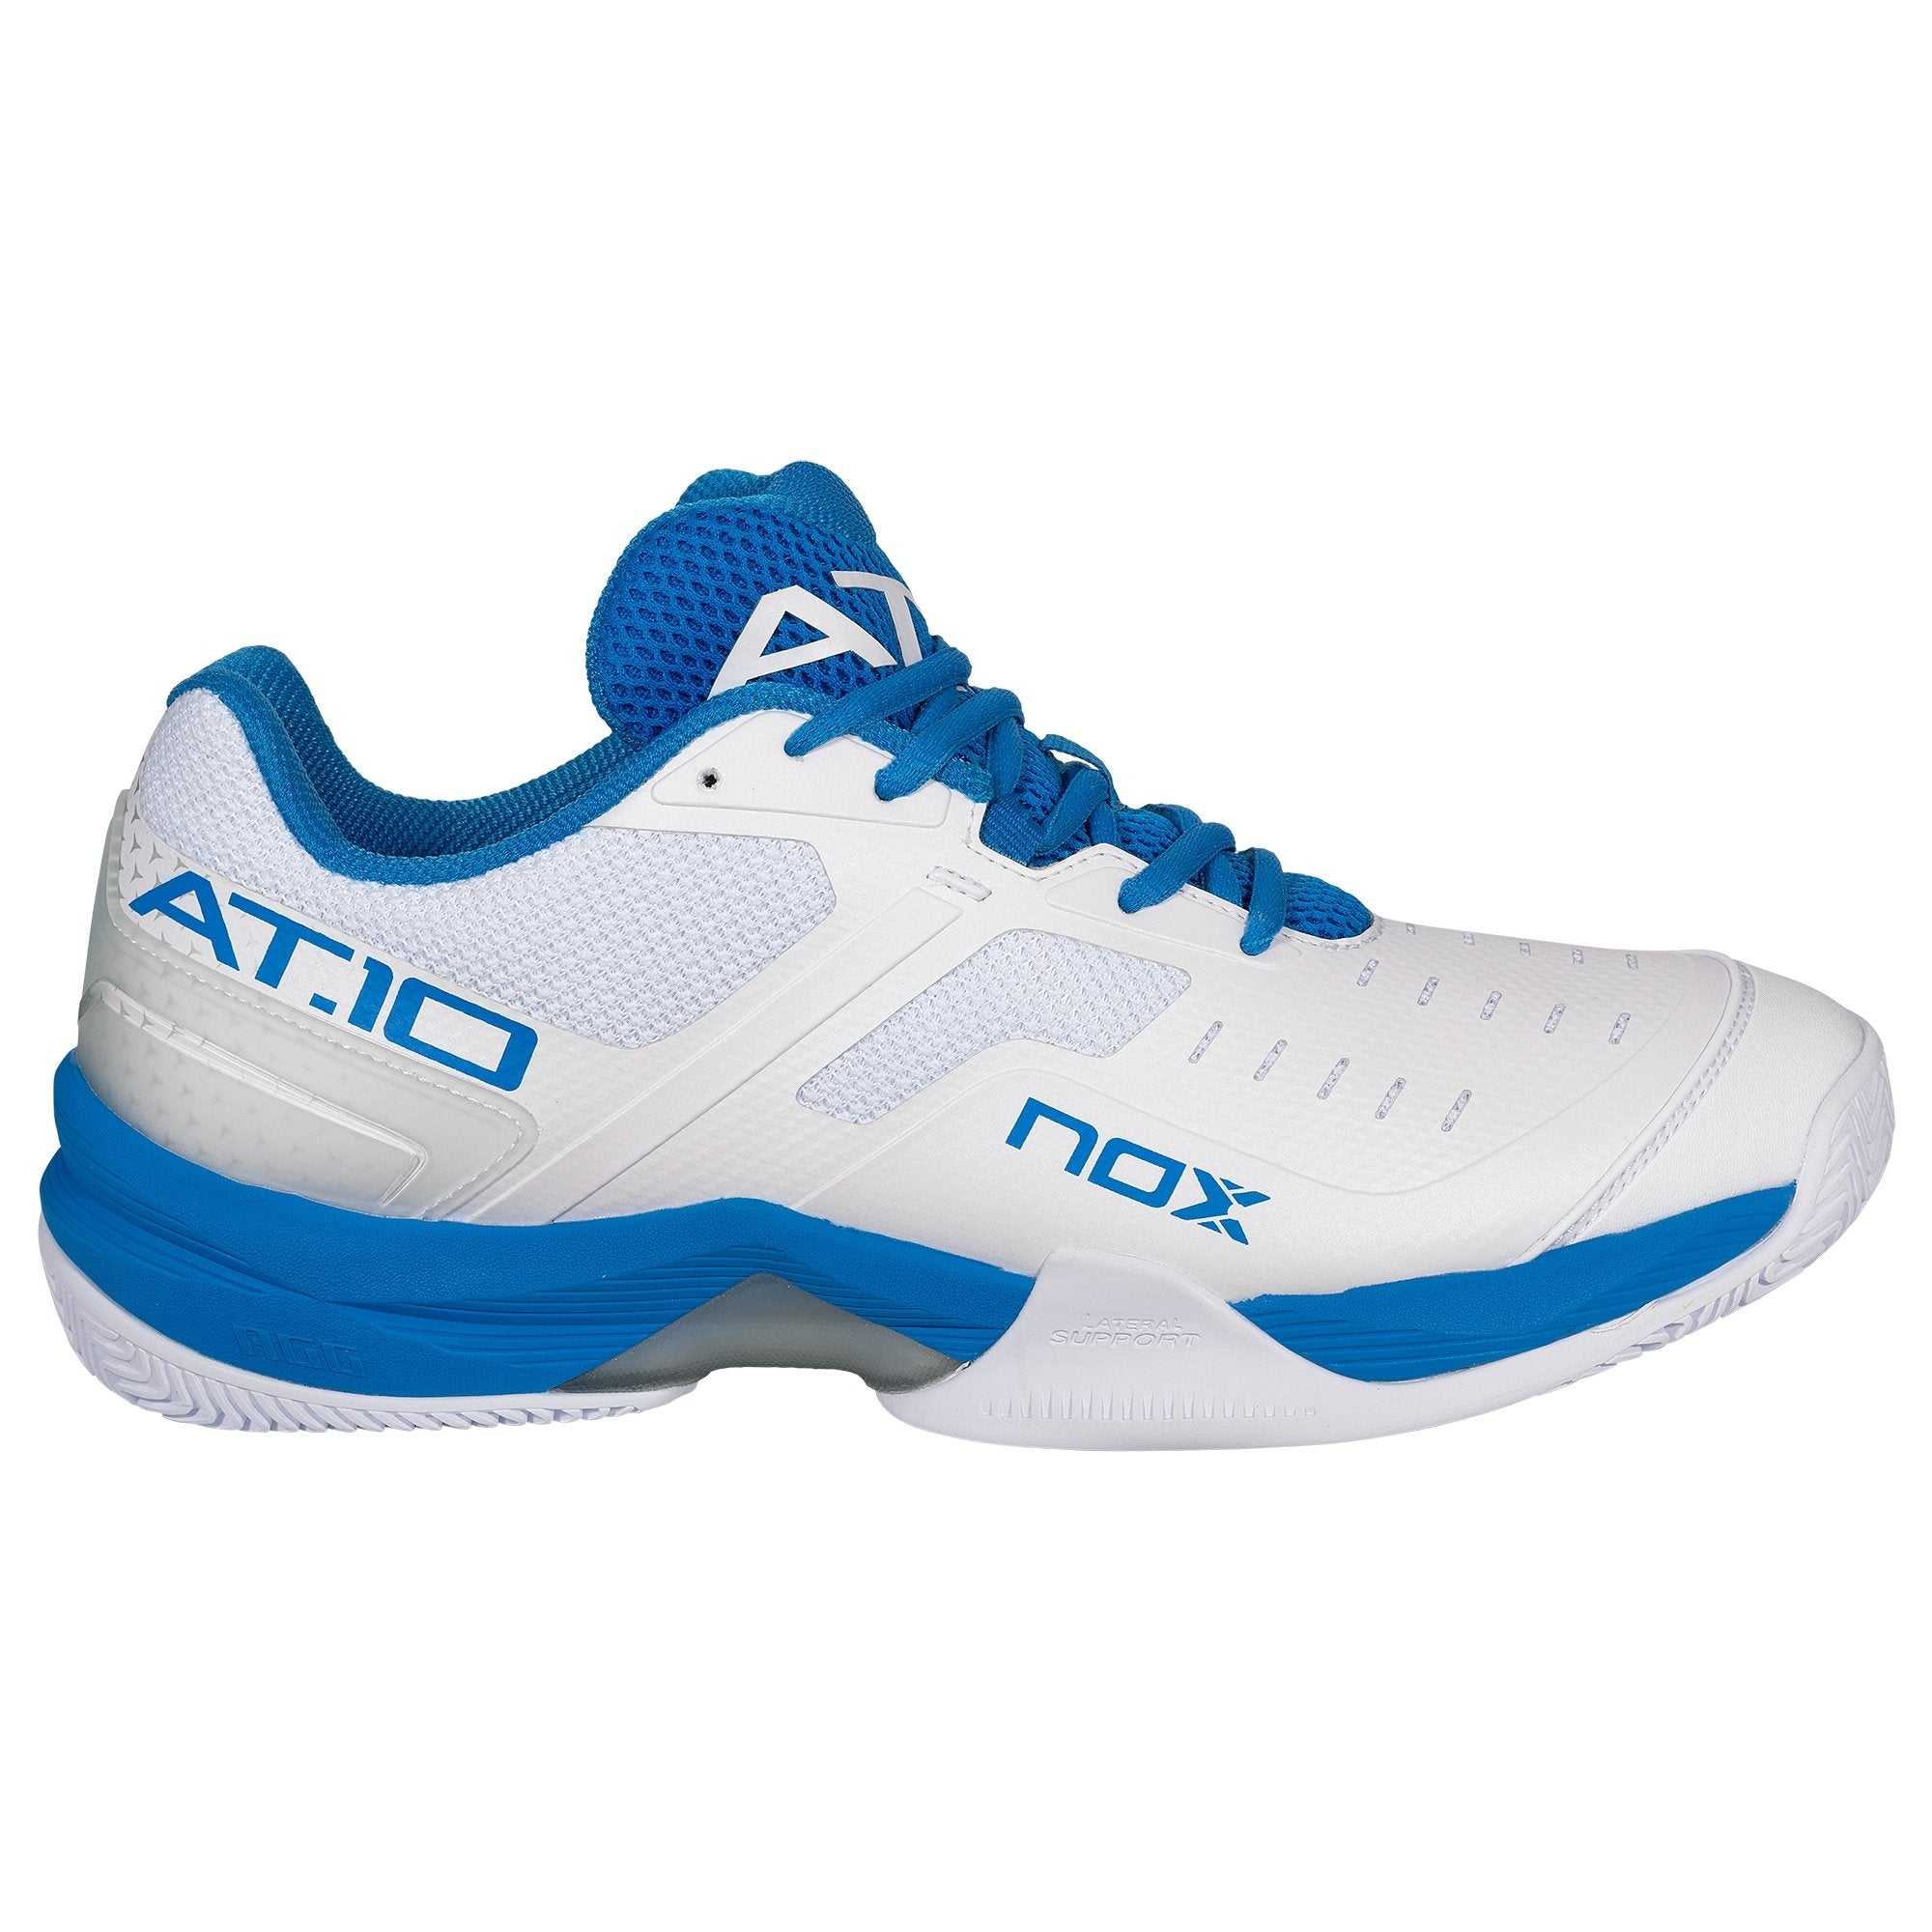 compilar Directamente Unir Zapatillas de Pádel Nox AT10 Blanco/Azul – NOX